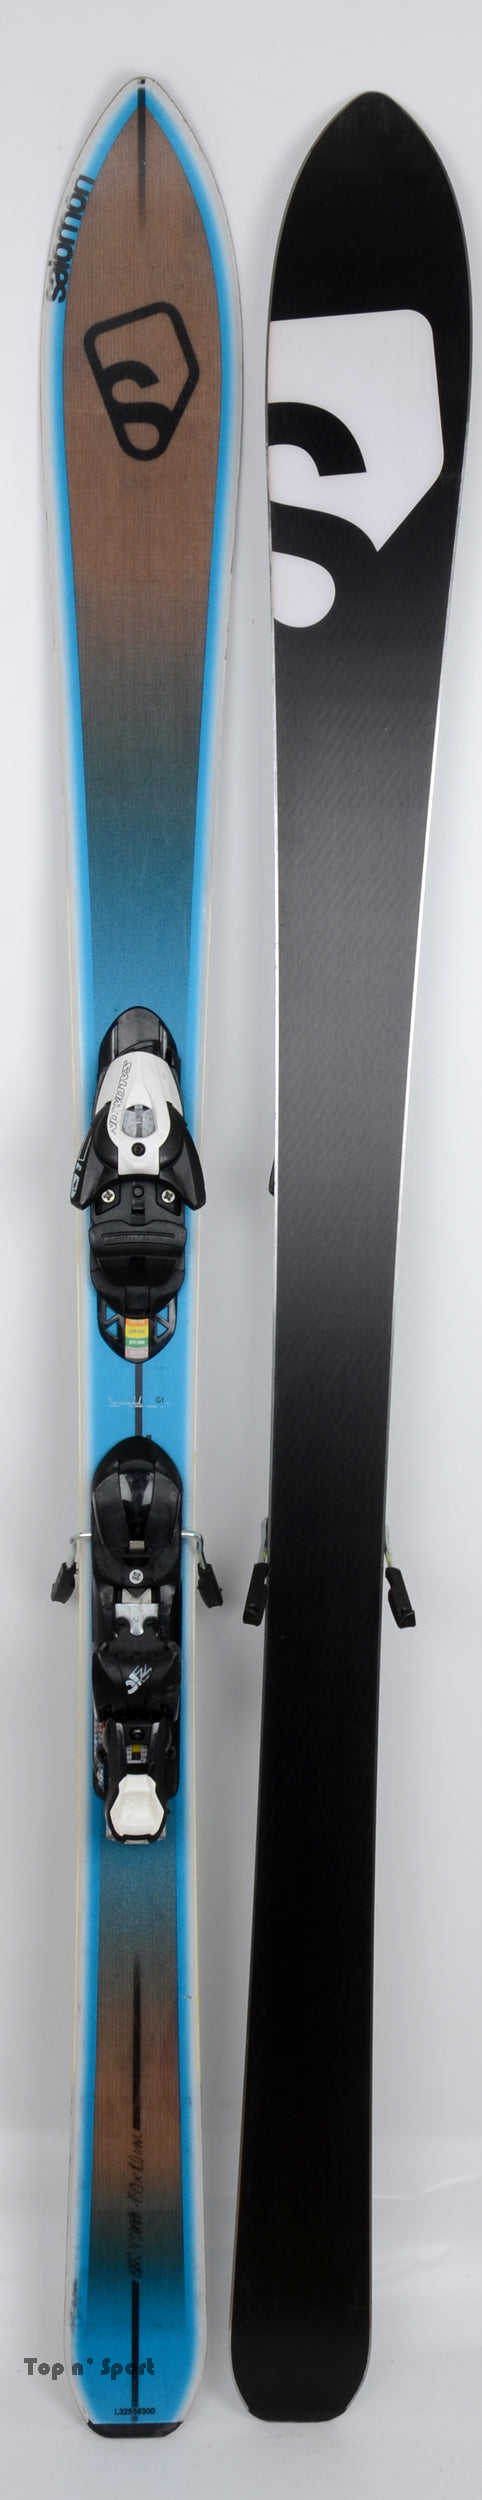 Salomon BBR 8,0 V SHAPE - skis d'occasion